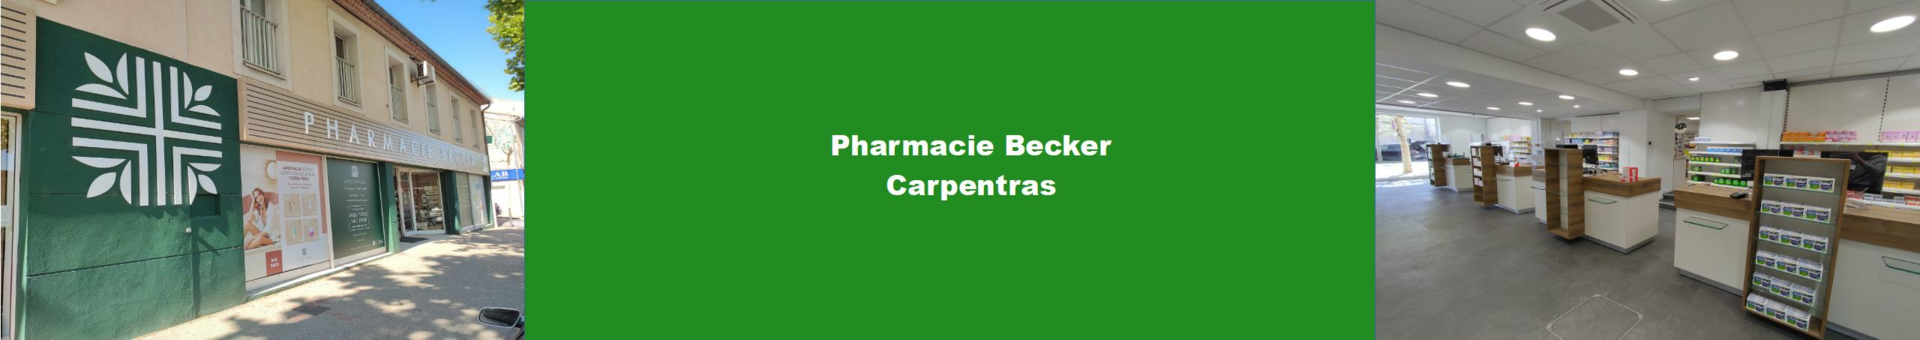 Pharmacie Becker Carpentras - Parapharmacie Bibs Colour 6-18 Mois  Haze/blossom T2 - CARPENTRAS